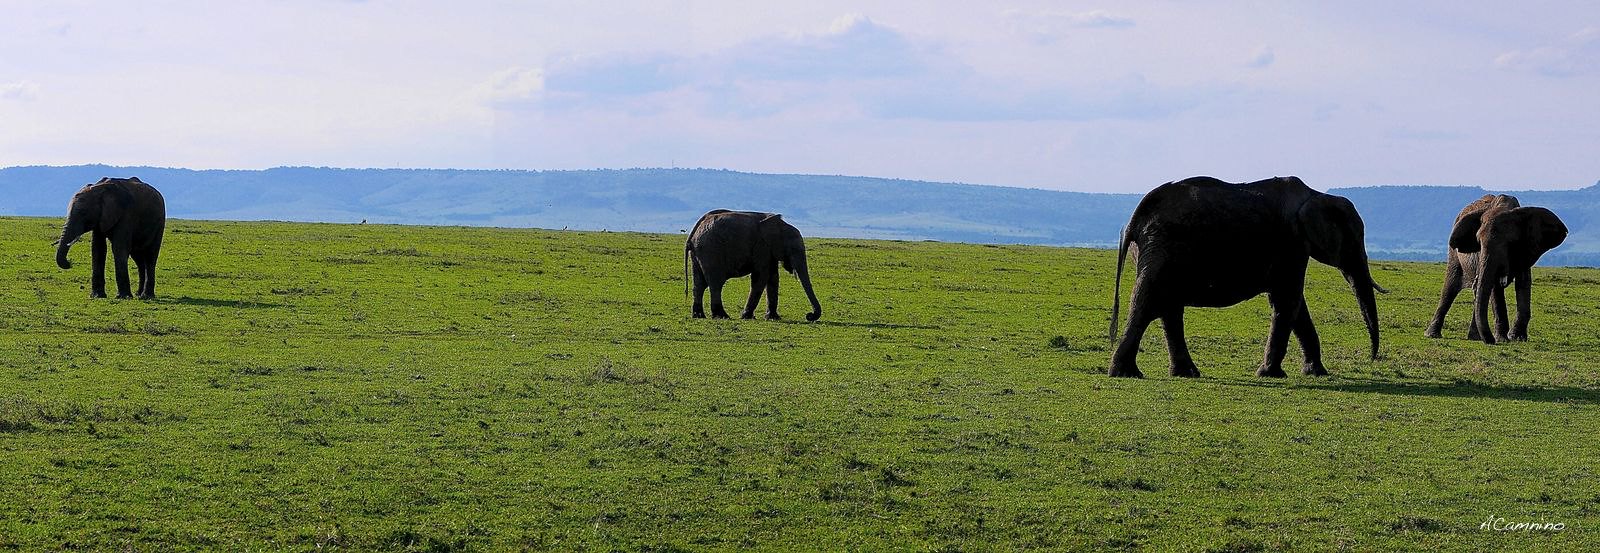 12 días de Safari en Kenia: Jambo bwana - Blogs de Kenia - El parto de una gacela en un Masai Mara, lleno de búfalos, leones, guepardos... (40)